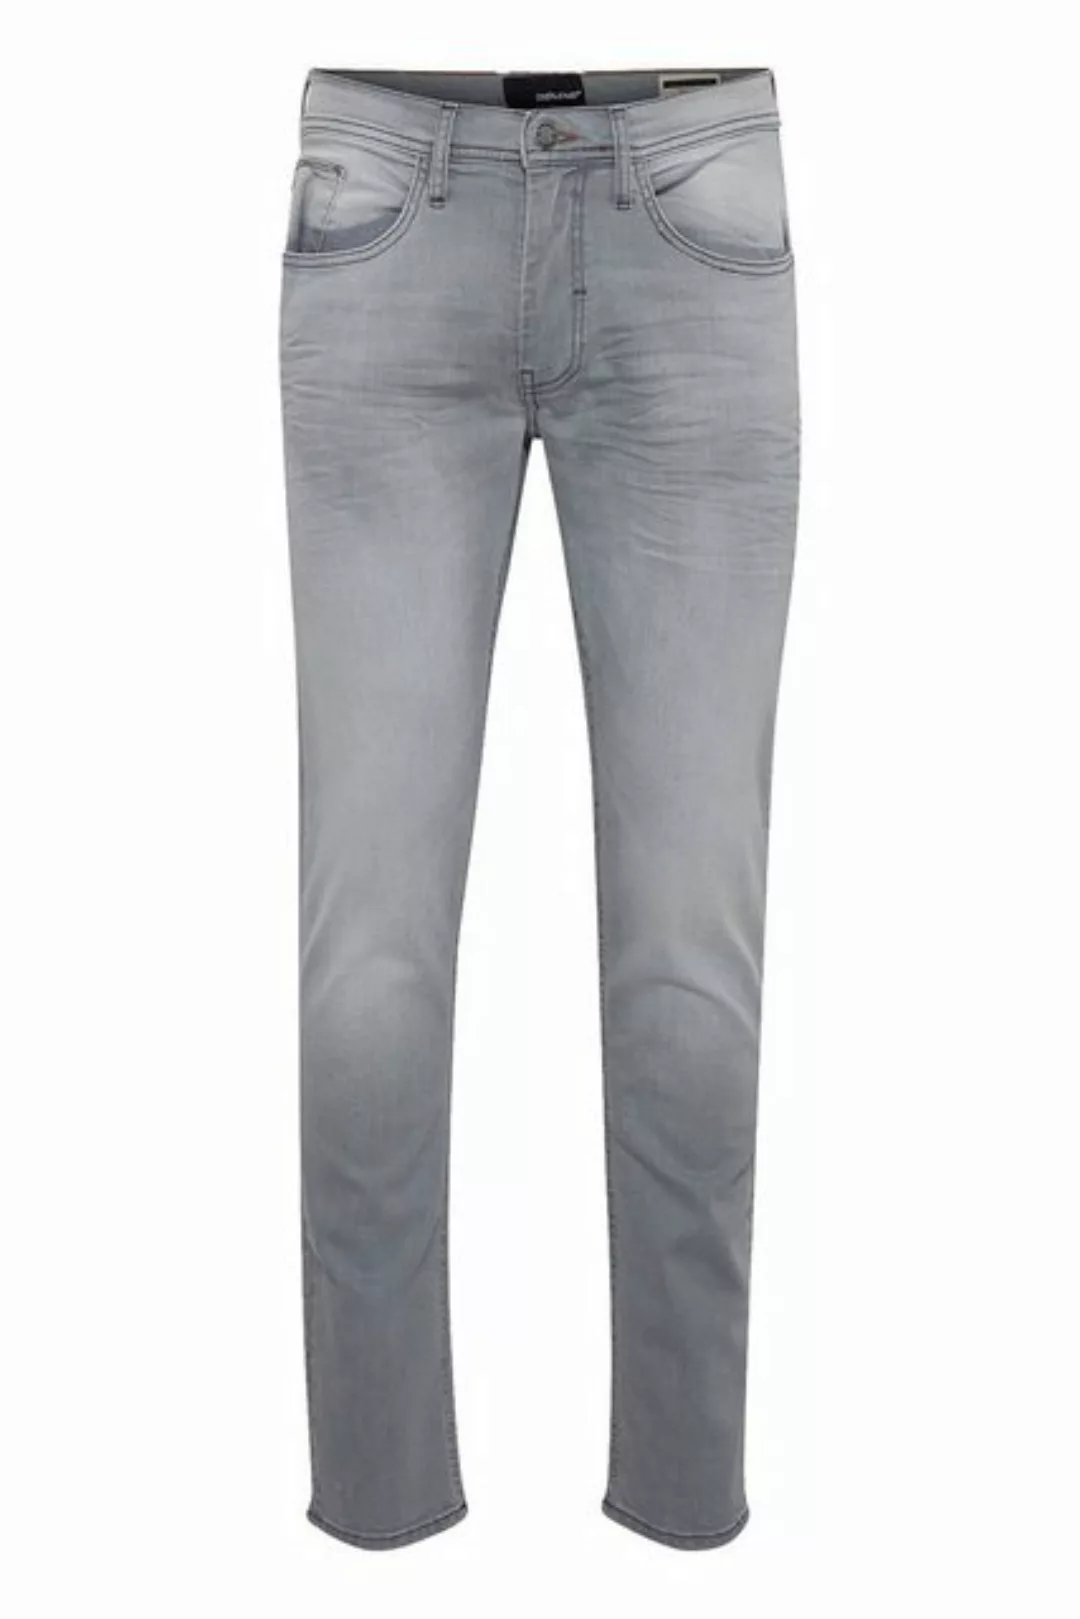 Blend Slim-fit-Jeans Slim Fit Jeans Basic Hose Denim Pants TWISTER FIT 5031 günstig online kaufen